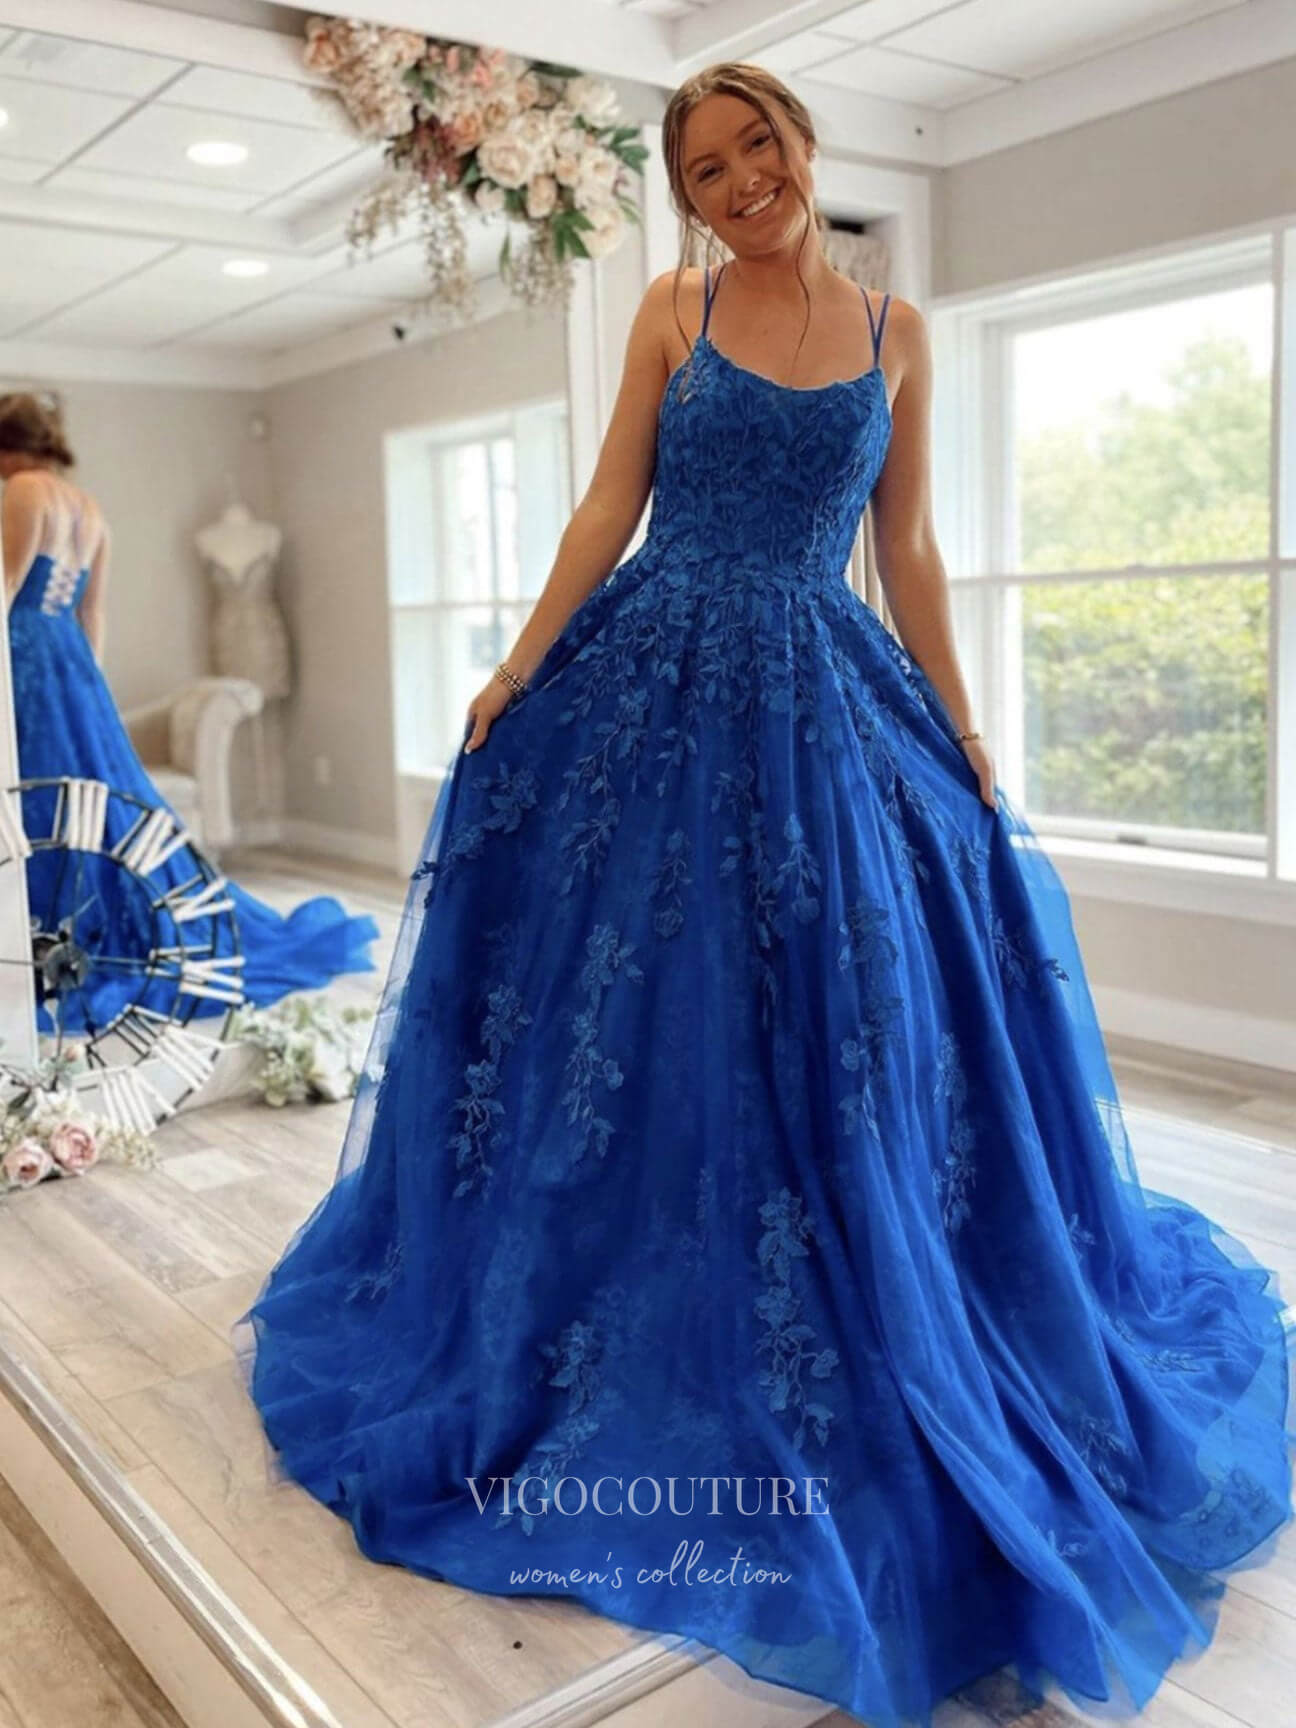 Royal Blue Lace